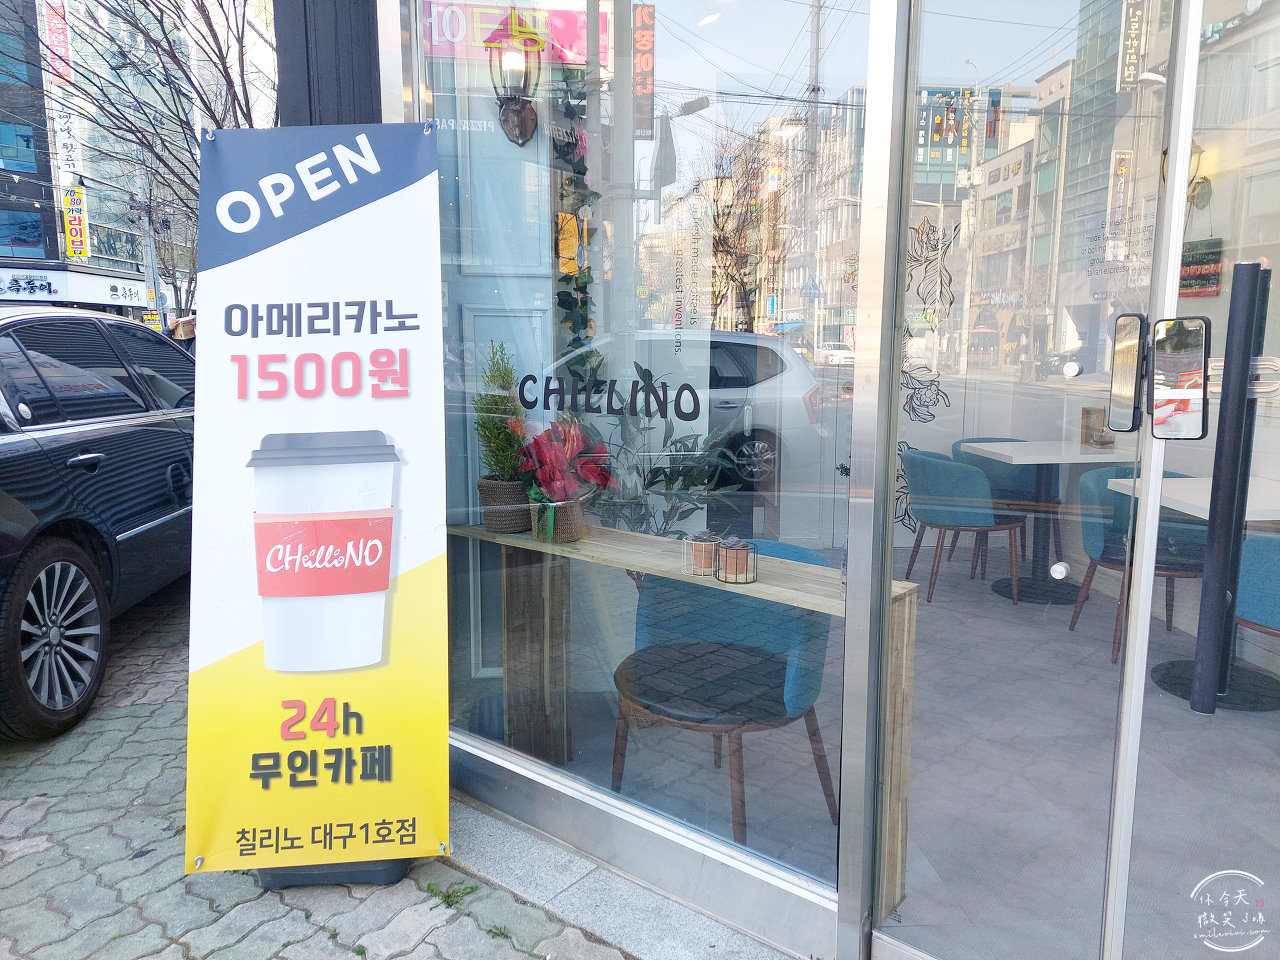 大邱∥CHILLINO 無人咖啡廳連鎖店(무인카페 칠리노)︱24 小時營運便宜咖啡，只能IC卡付款︱全韓國皆有分店︱韓國咖啡廳︱韓國咖啡 2 CHILLINO 2